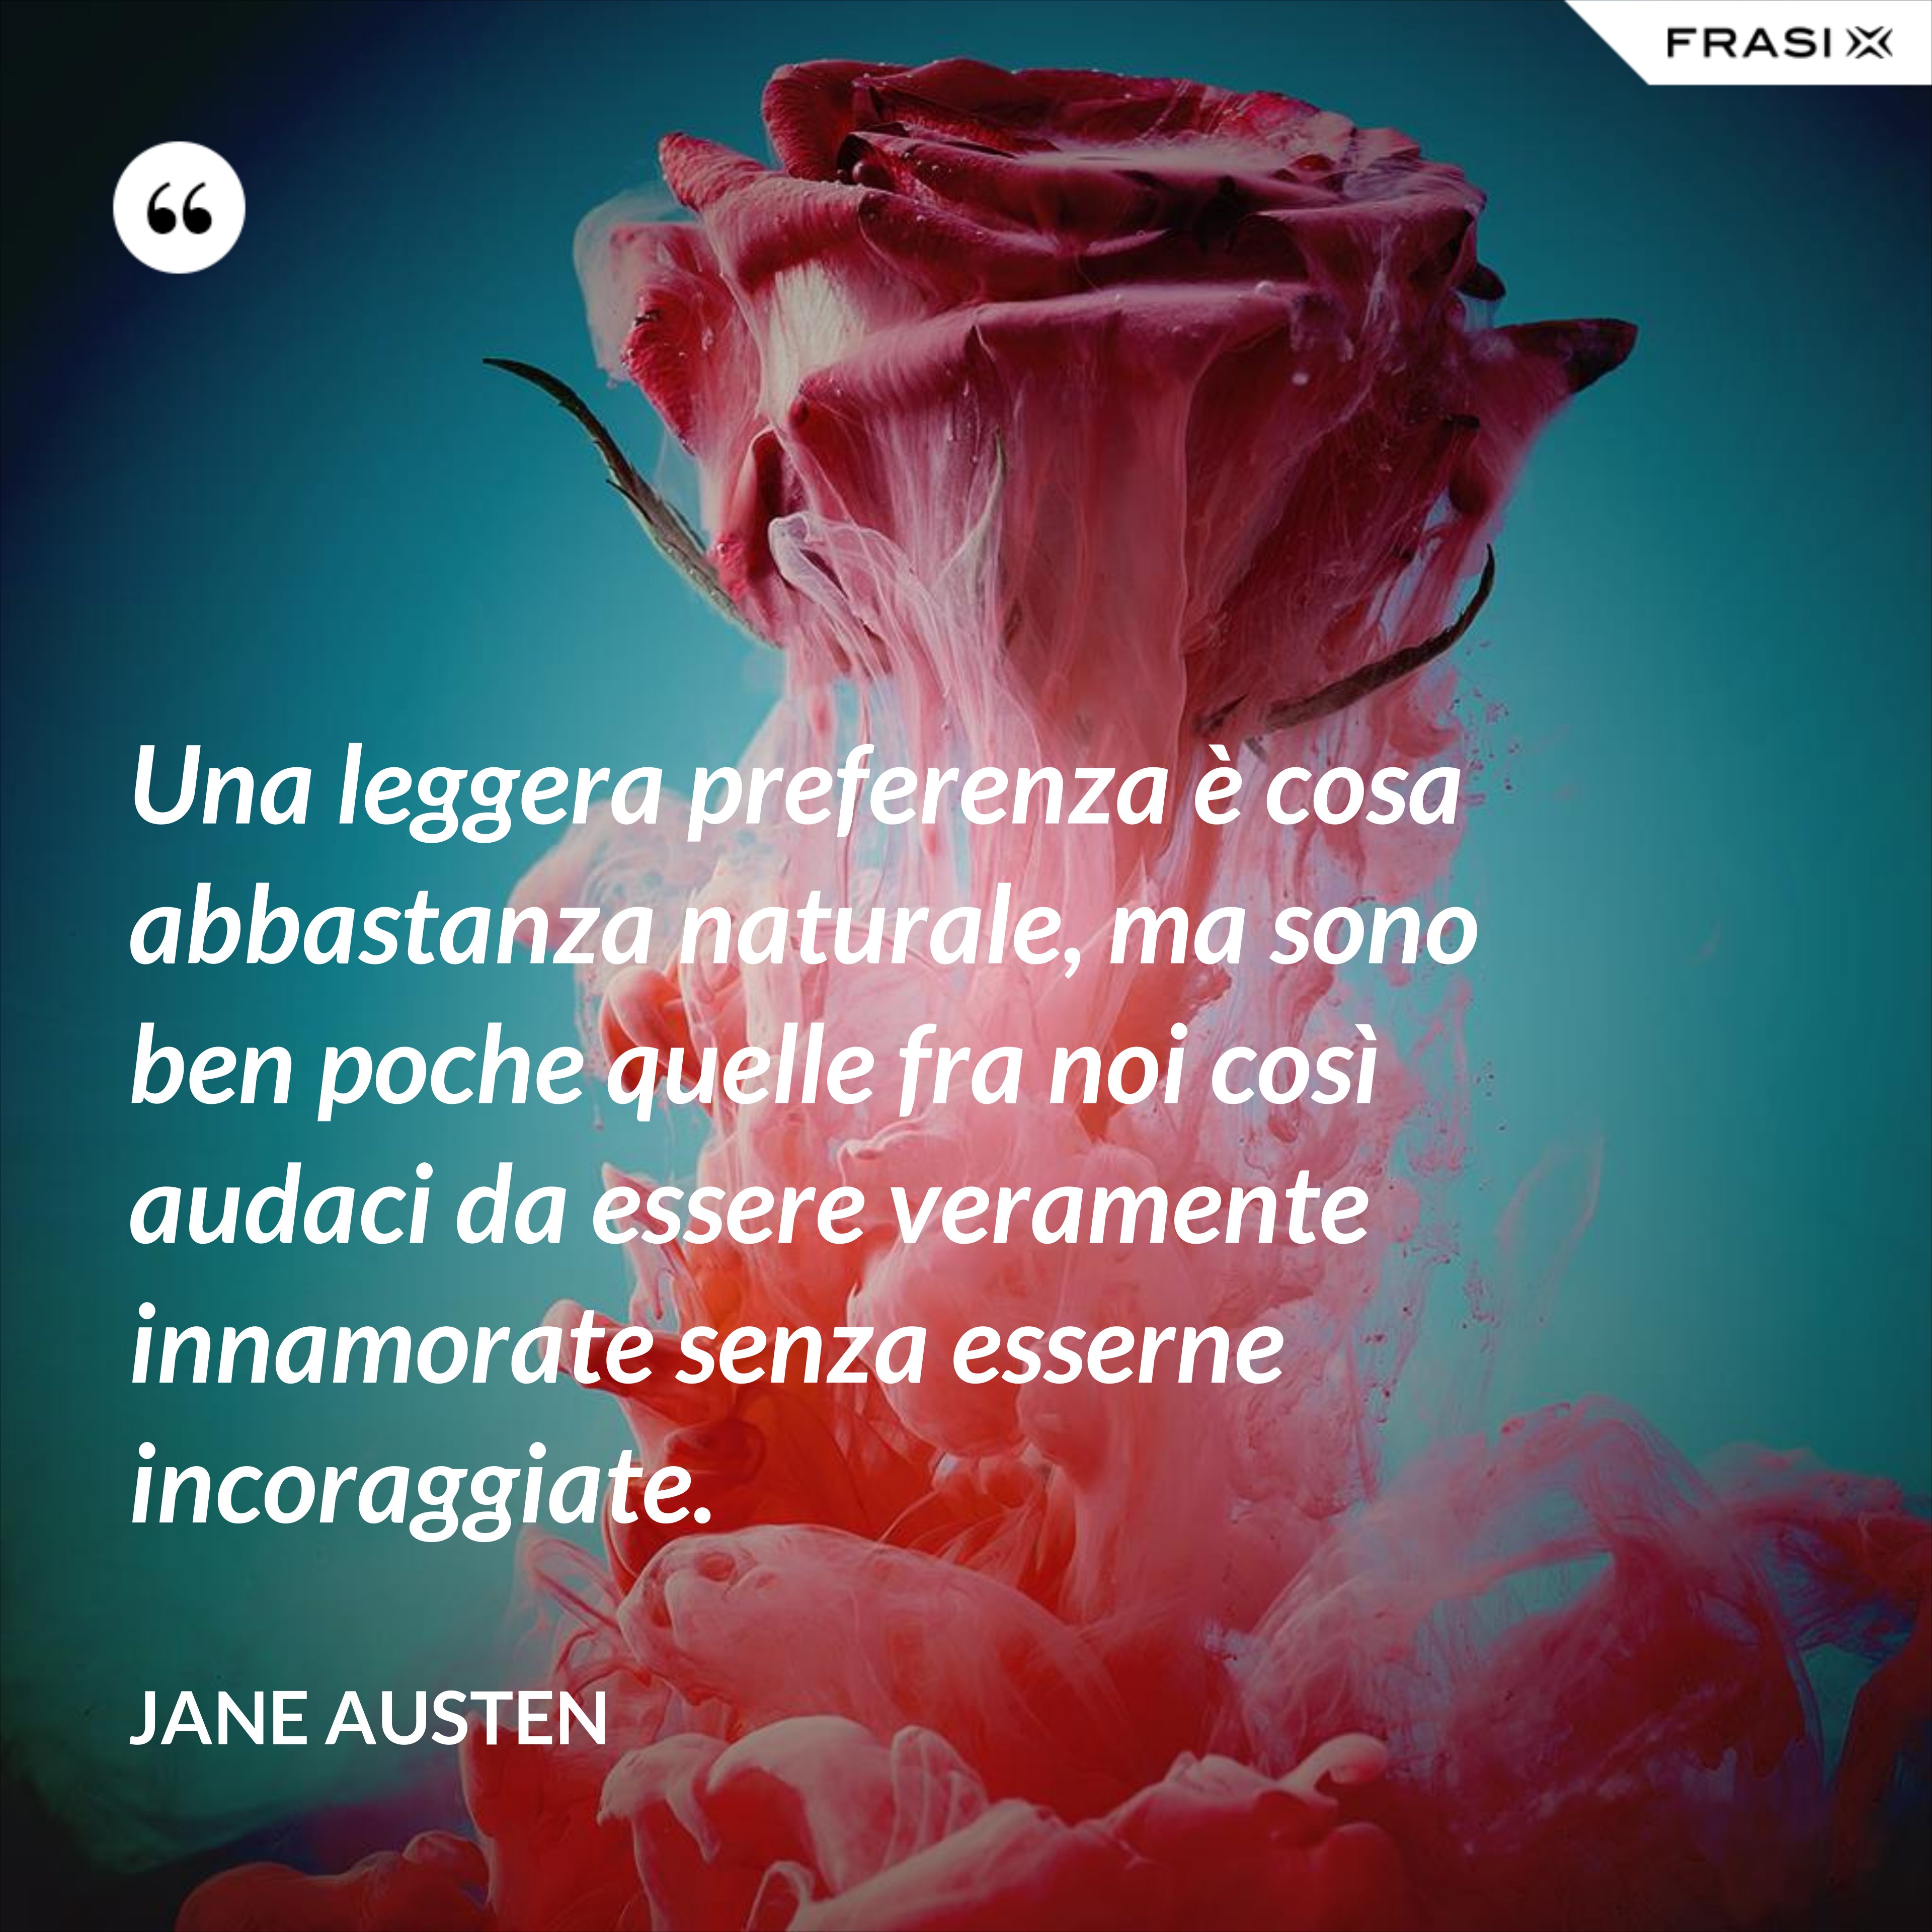 Una leggera preferenza è cosa abbastanza naturale, ma sono ben poche quelle fra noi così audaci da essere veramente innamorate senza esserne incoraggiate. - Jane Austen